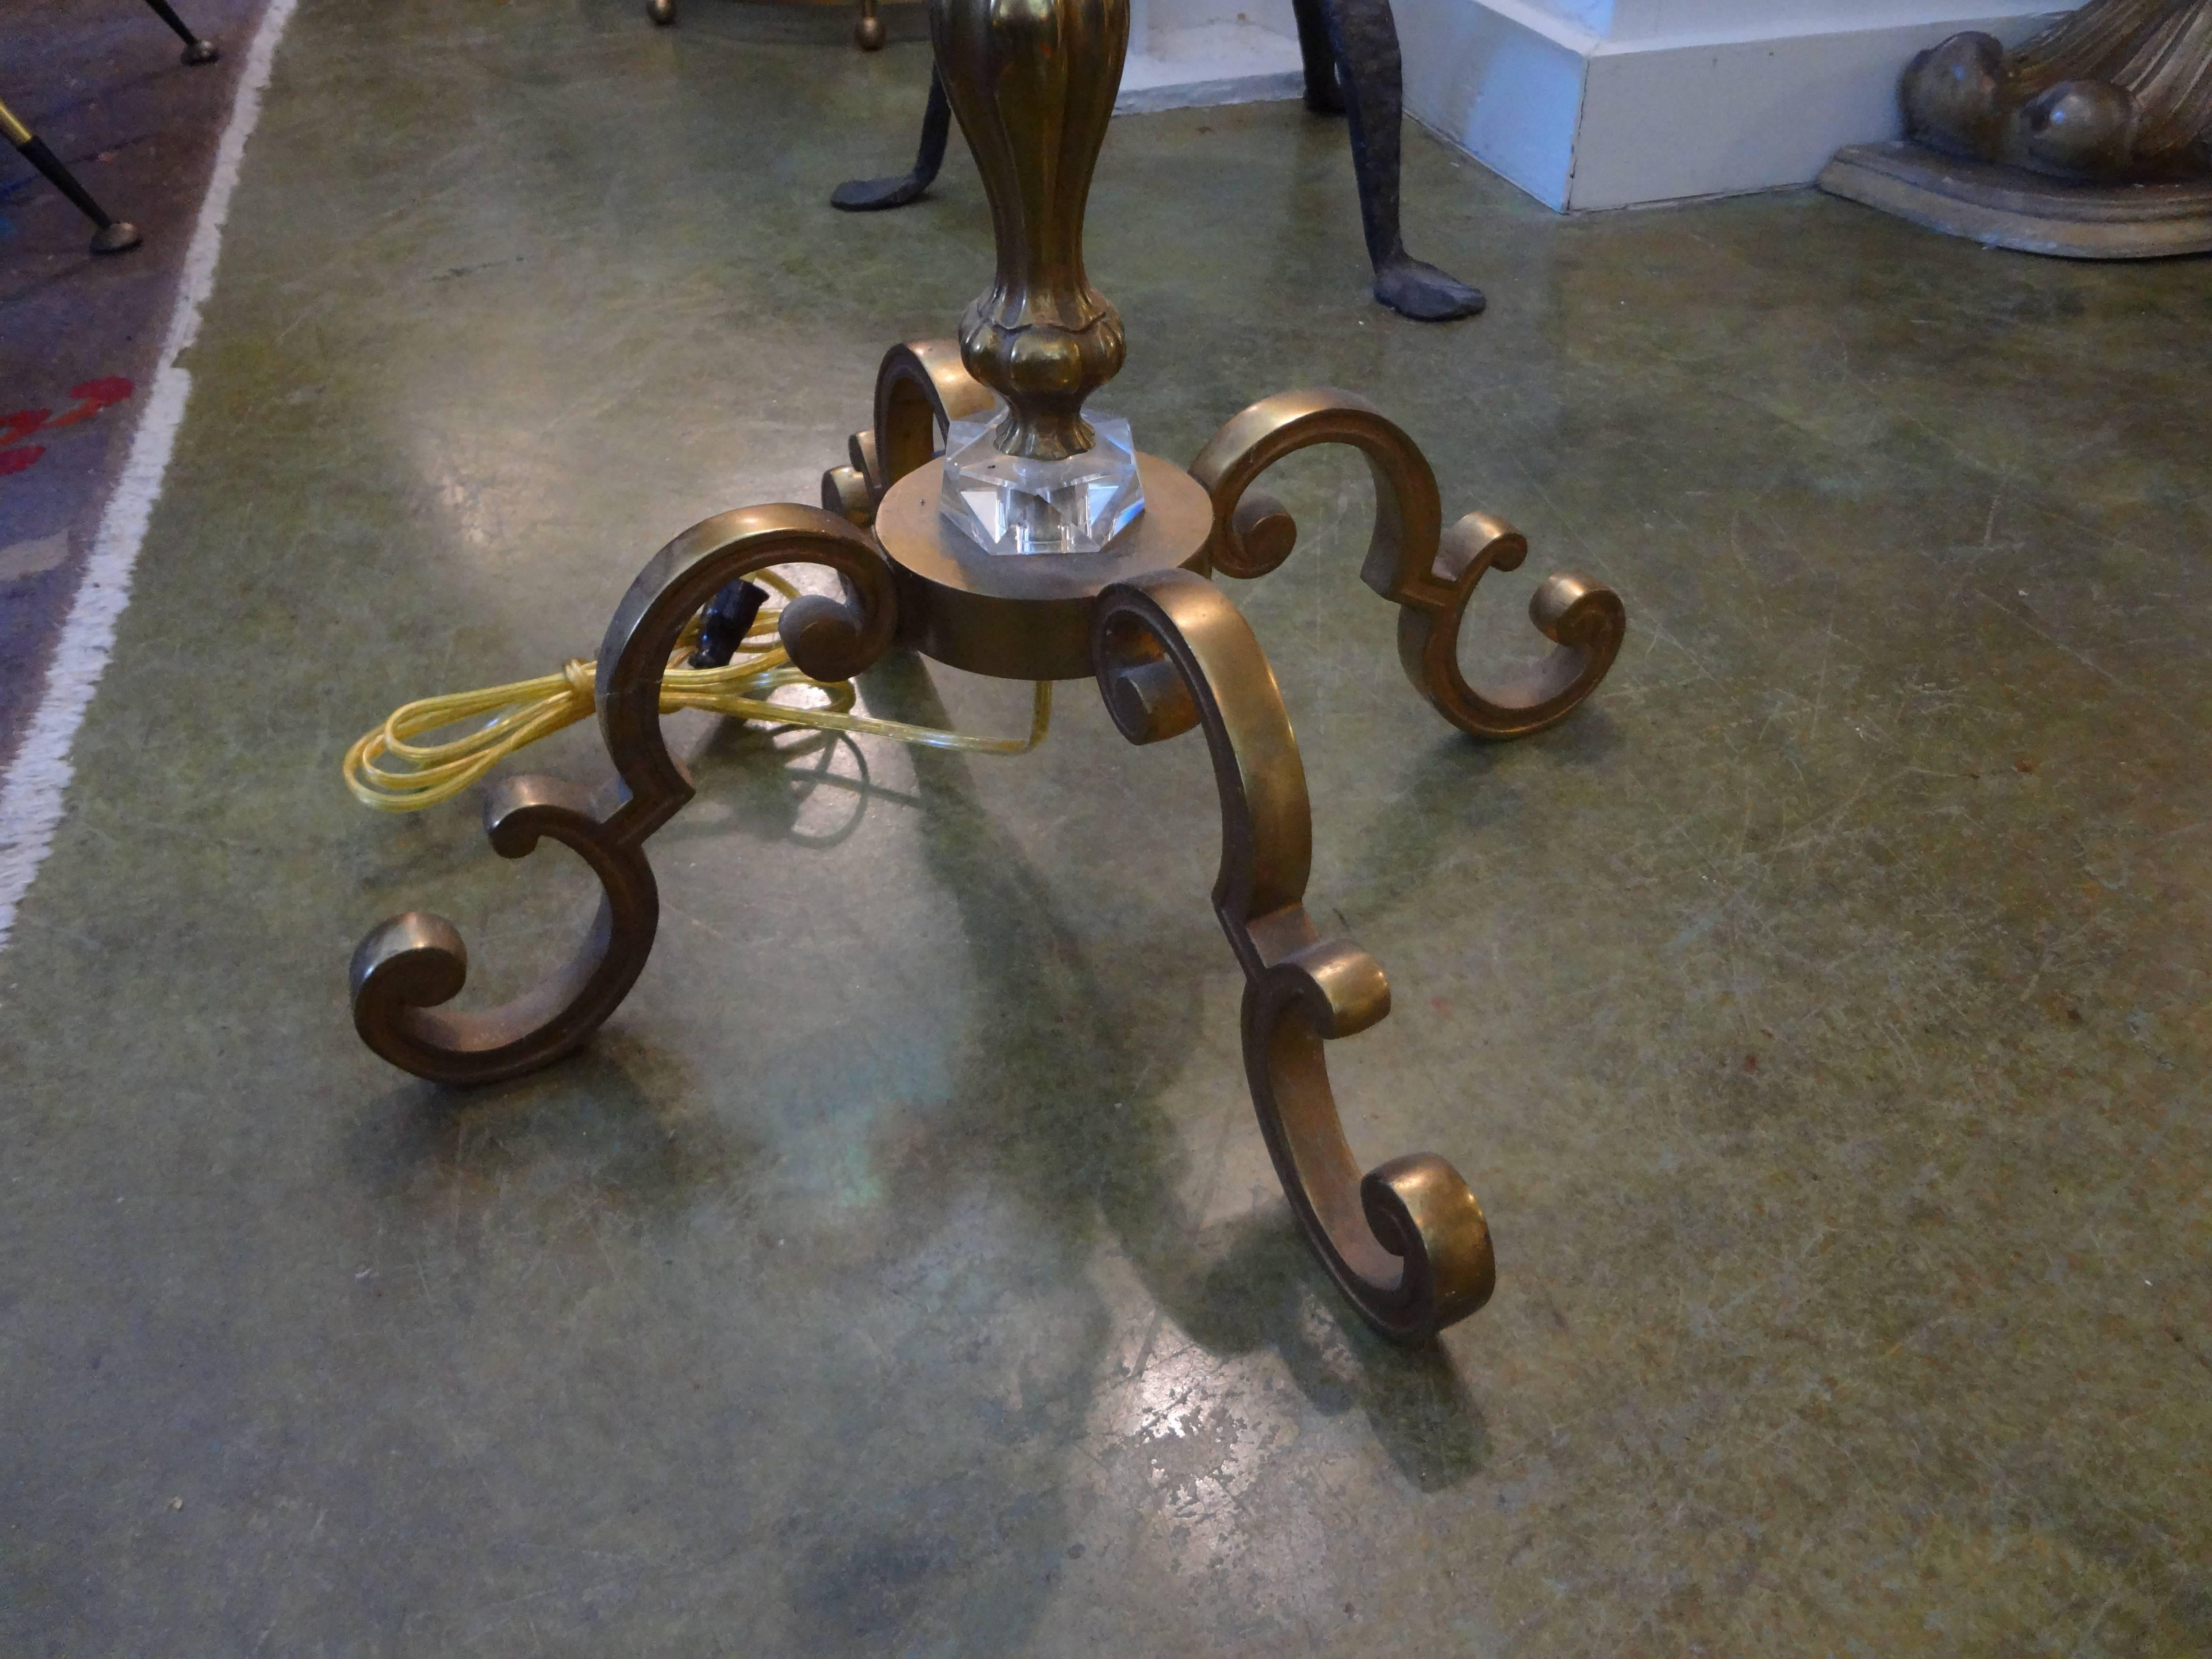 Französische Stehlampe aus Messing und Glas aus der Jahrhundertmitte, inspiriert von Jacques Adnet.
Stilvolle Stehleuchte im Stil von Jacques Adnet aus Bronze oder Messing und Glas. Neu verkabelt für den US-Markt. (Shade as-is, ist nicht in diesem